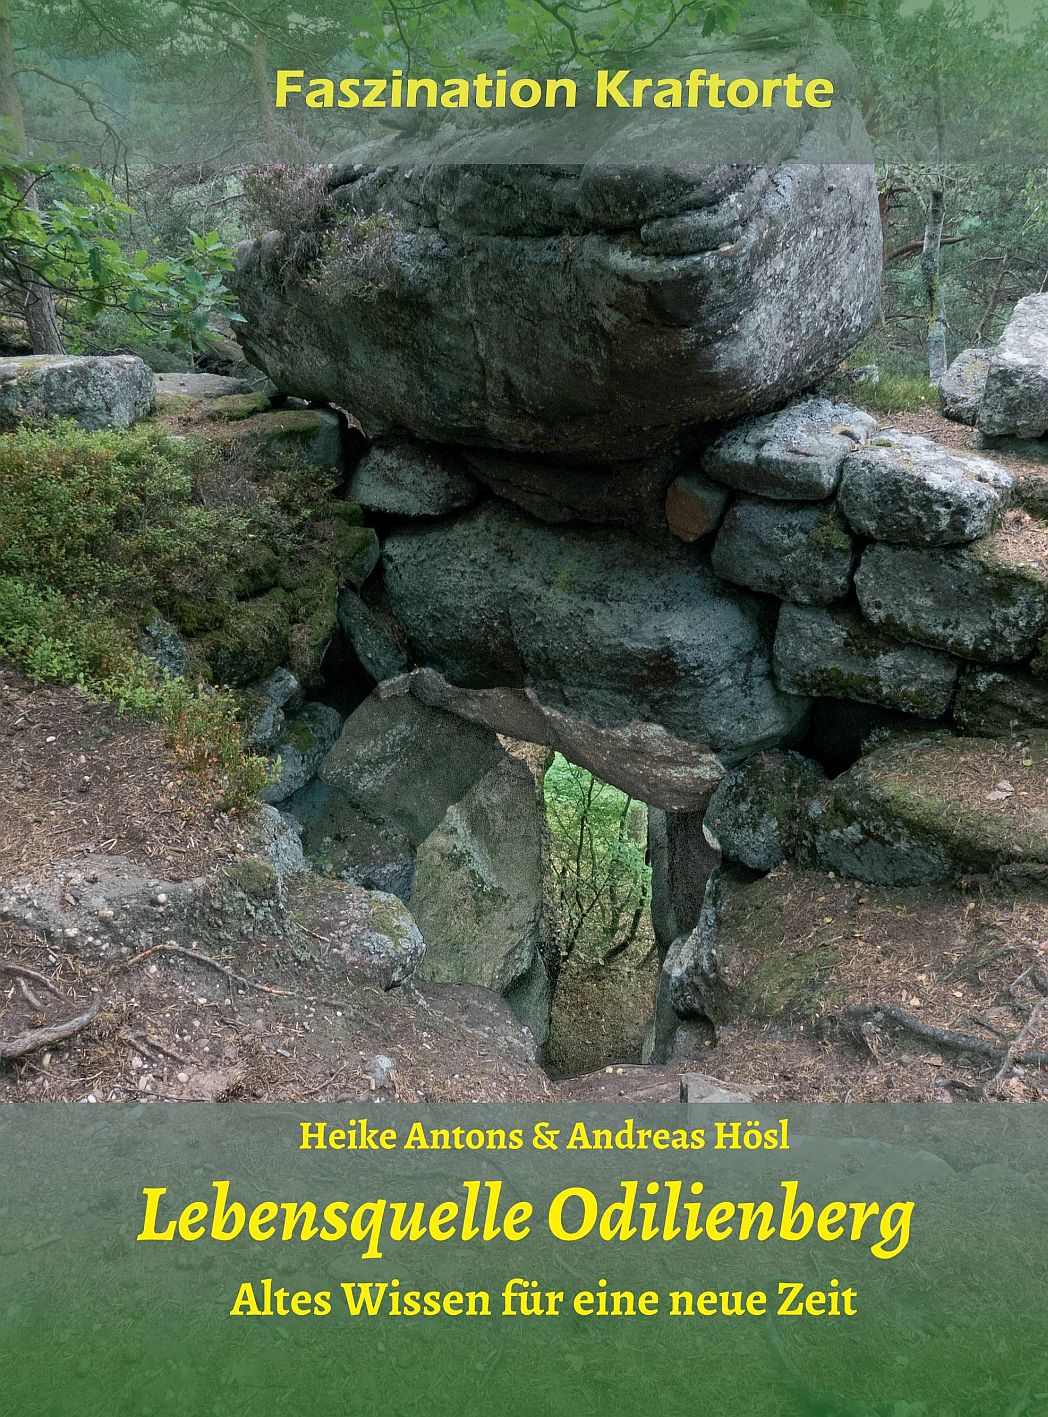 Seitenanzahl: 324
ISBN: 978-3-7323-7604-9
Paperback 34,00 €
Verlag Tredition